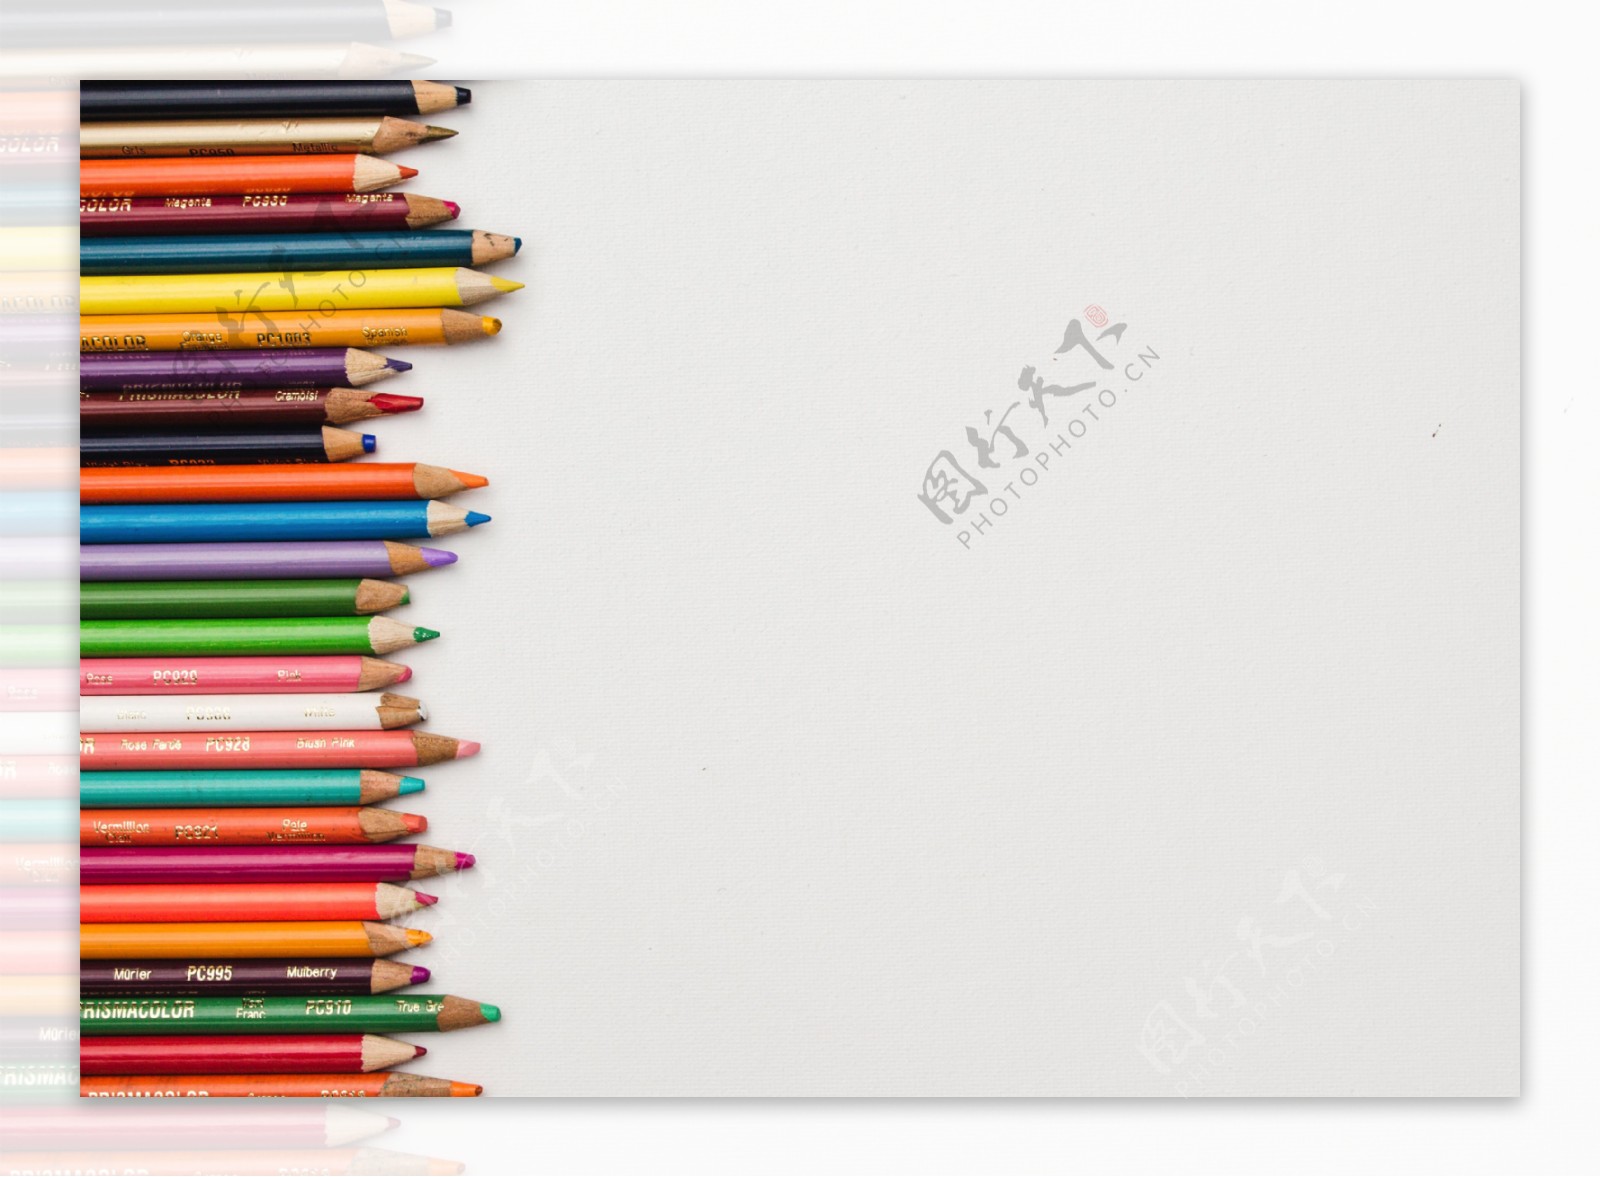 堆彩色铅笔